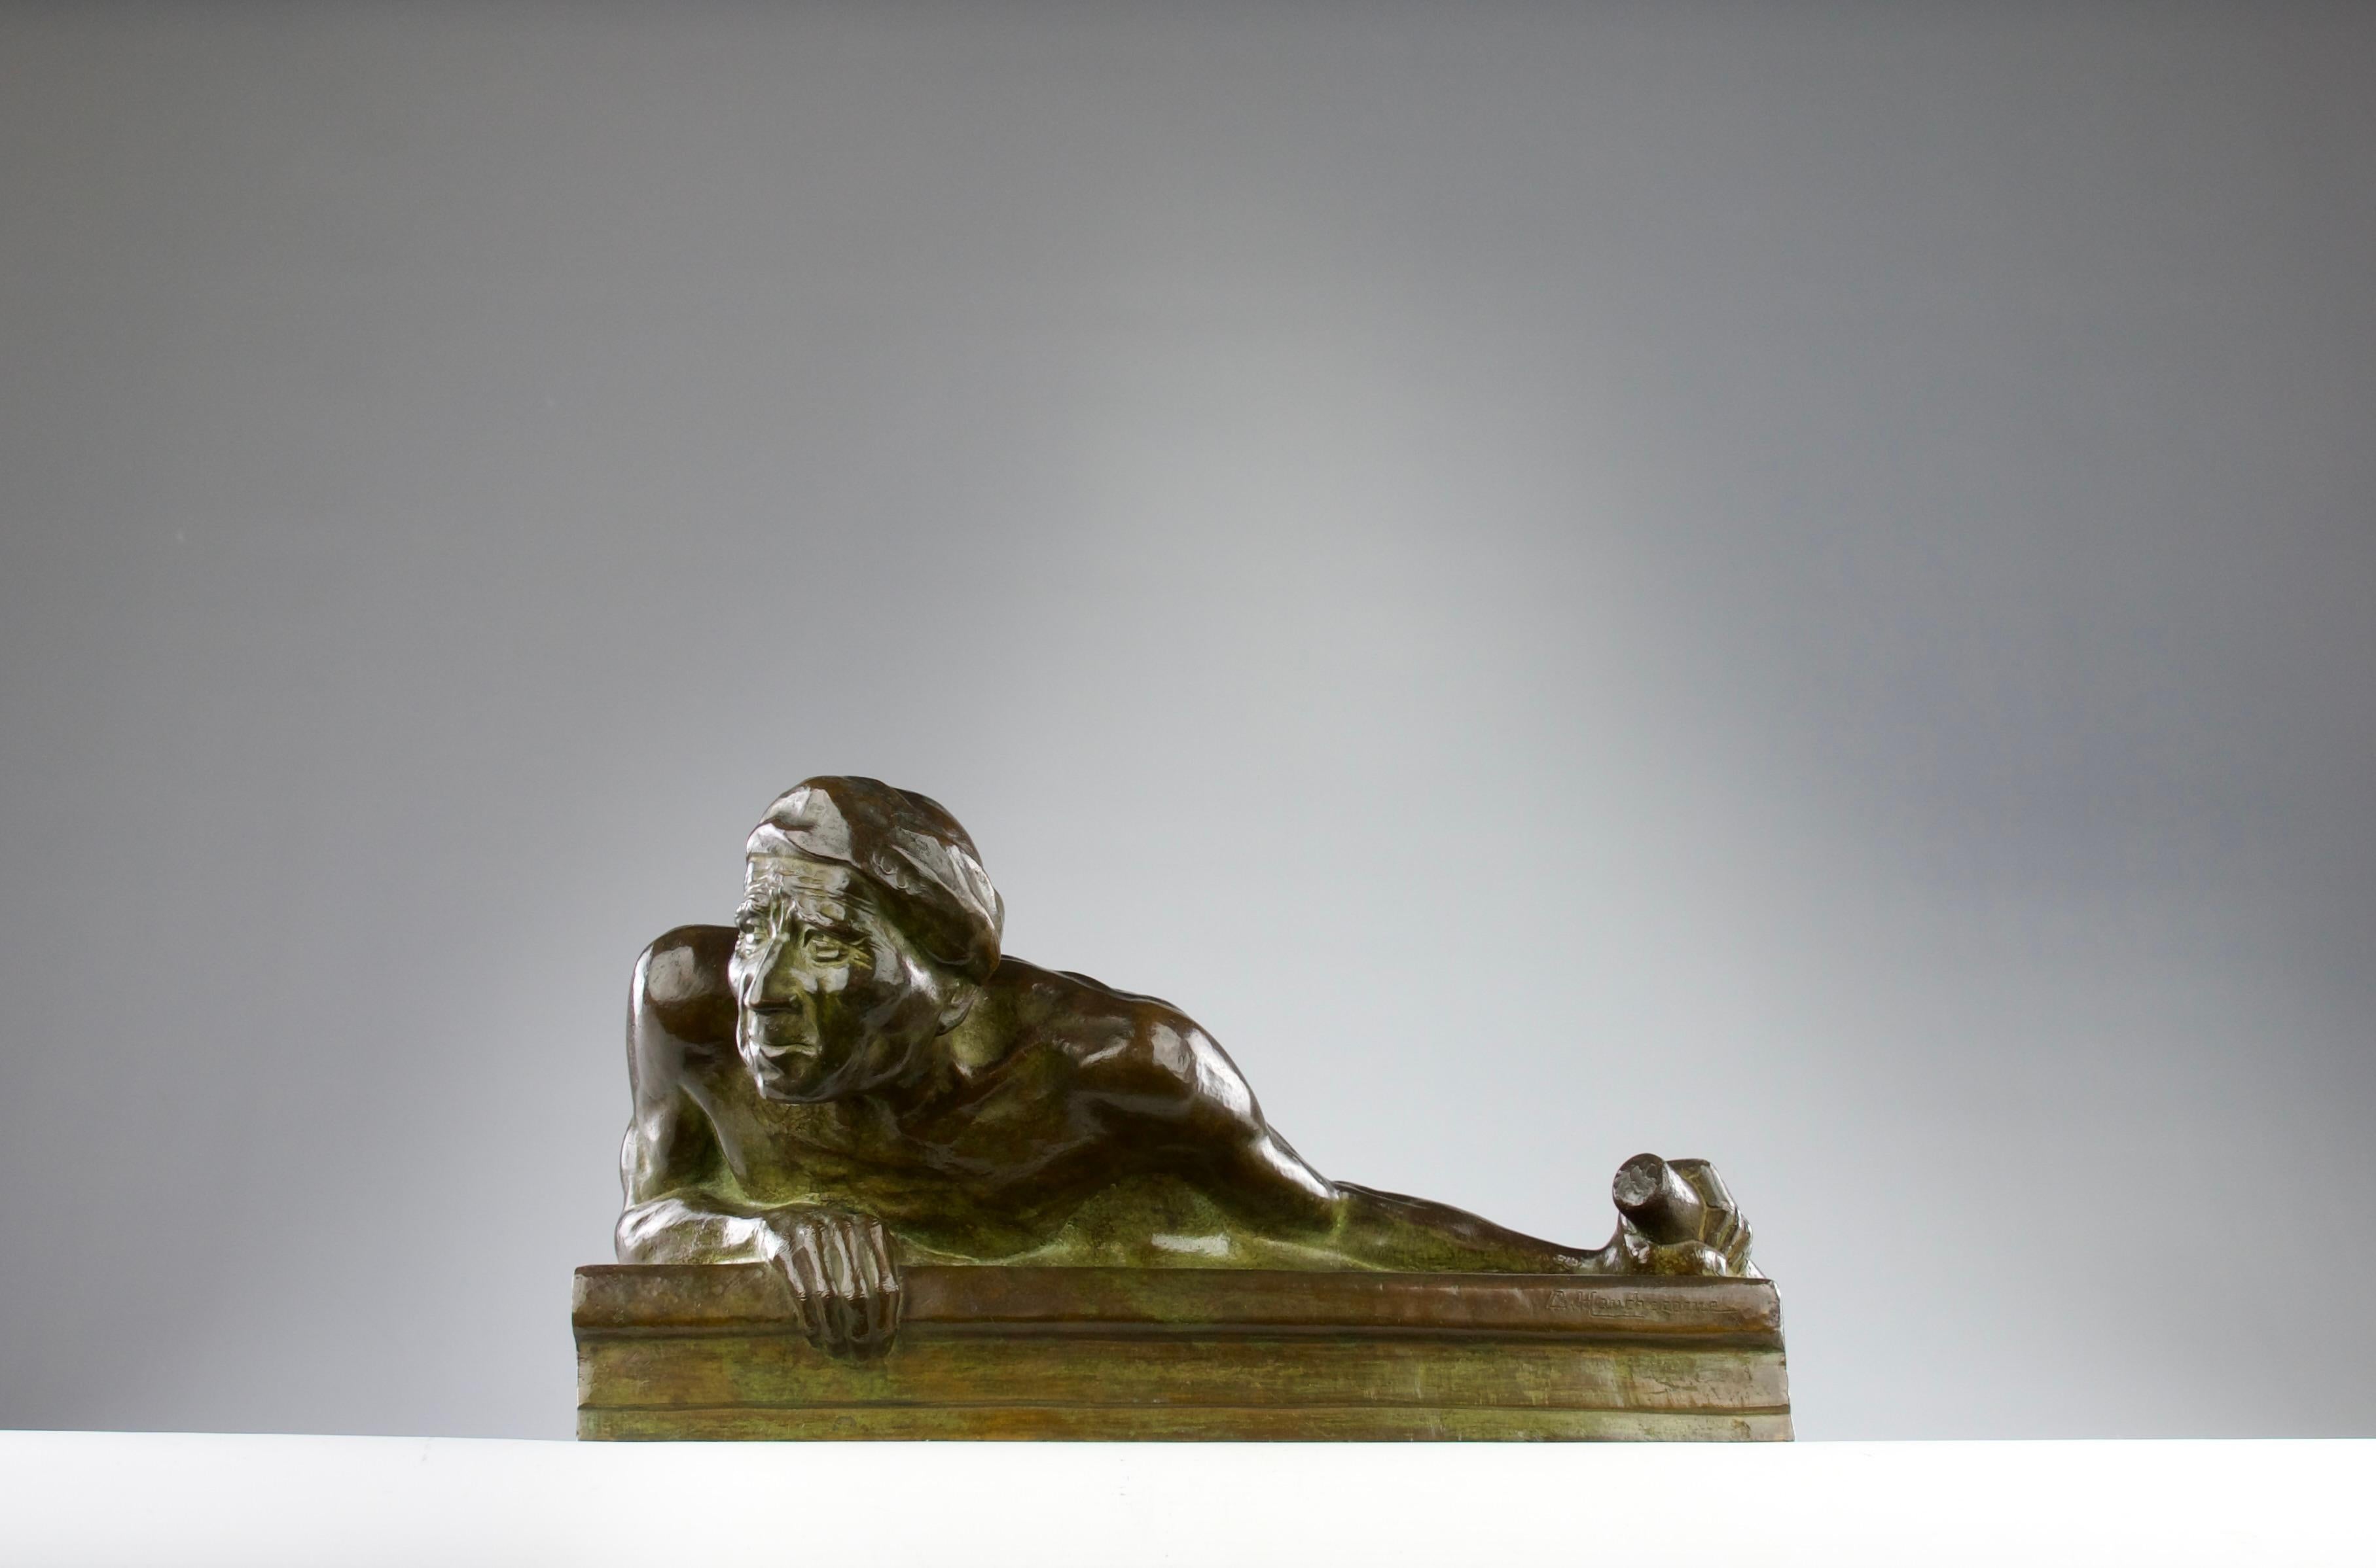 Superbe sculpture en bronze à patine verte de Gaston Hauchecorne, France, années 1920. Représentation d'un pirate Malayer s'accrochant d'une main à la rambarde d'un navire et de l'autre à la barre. Les détails des mains, des muscles et du visage